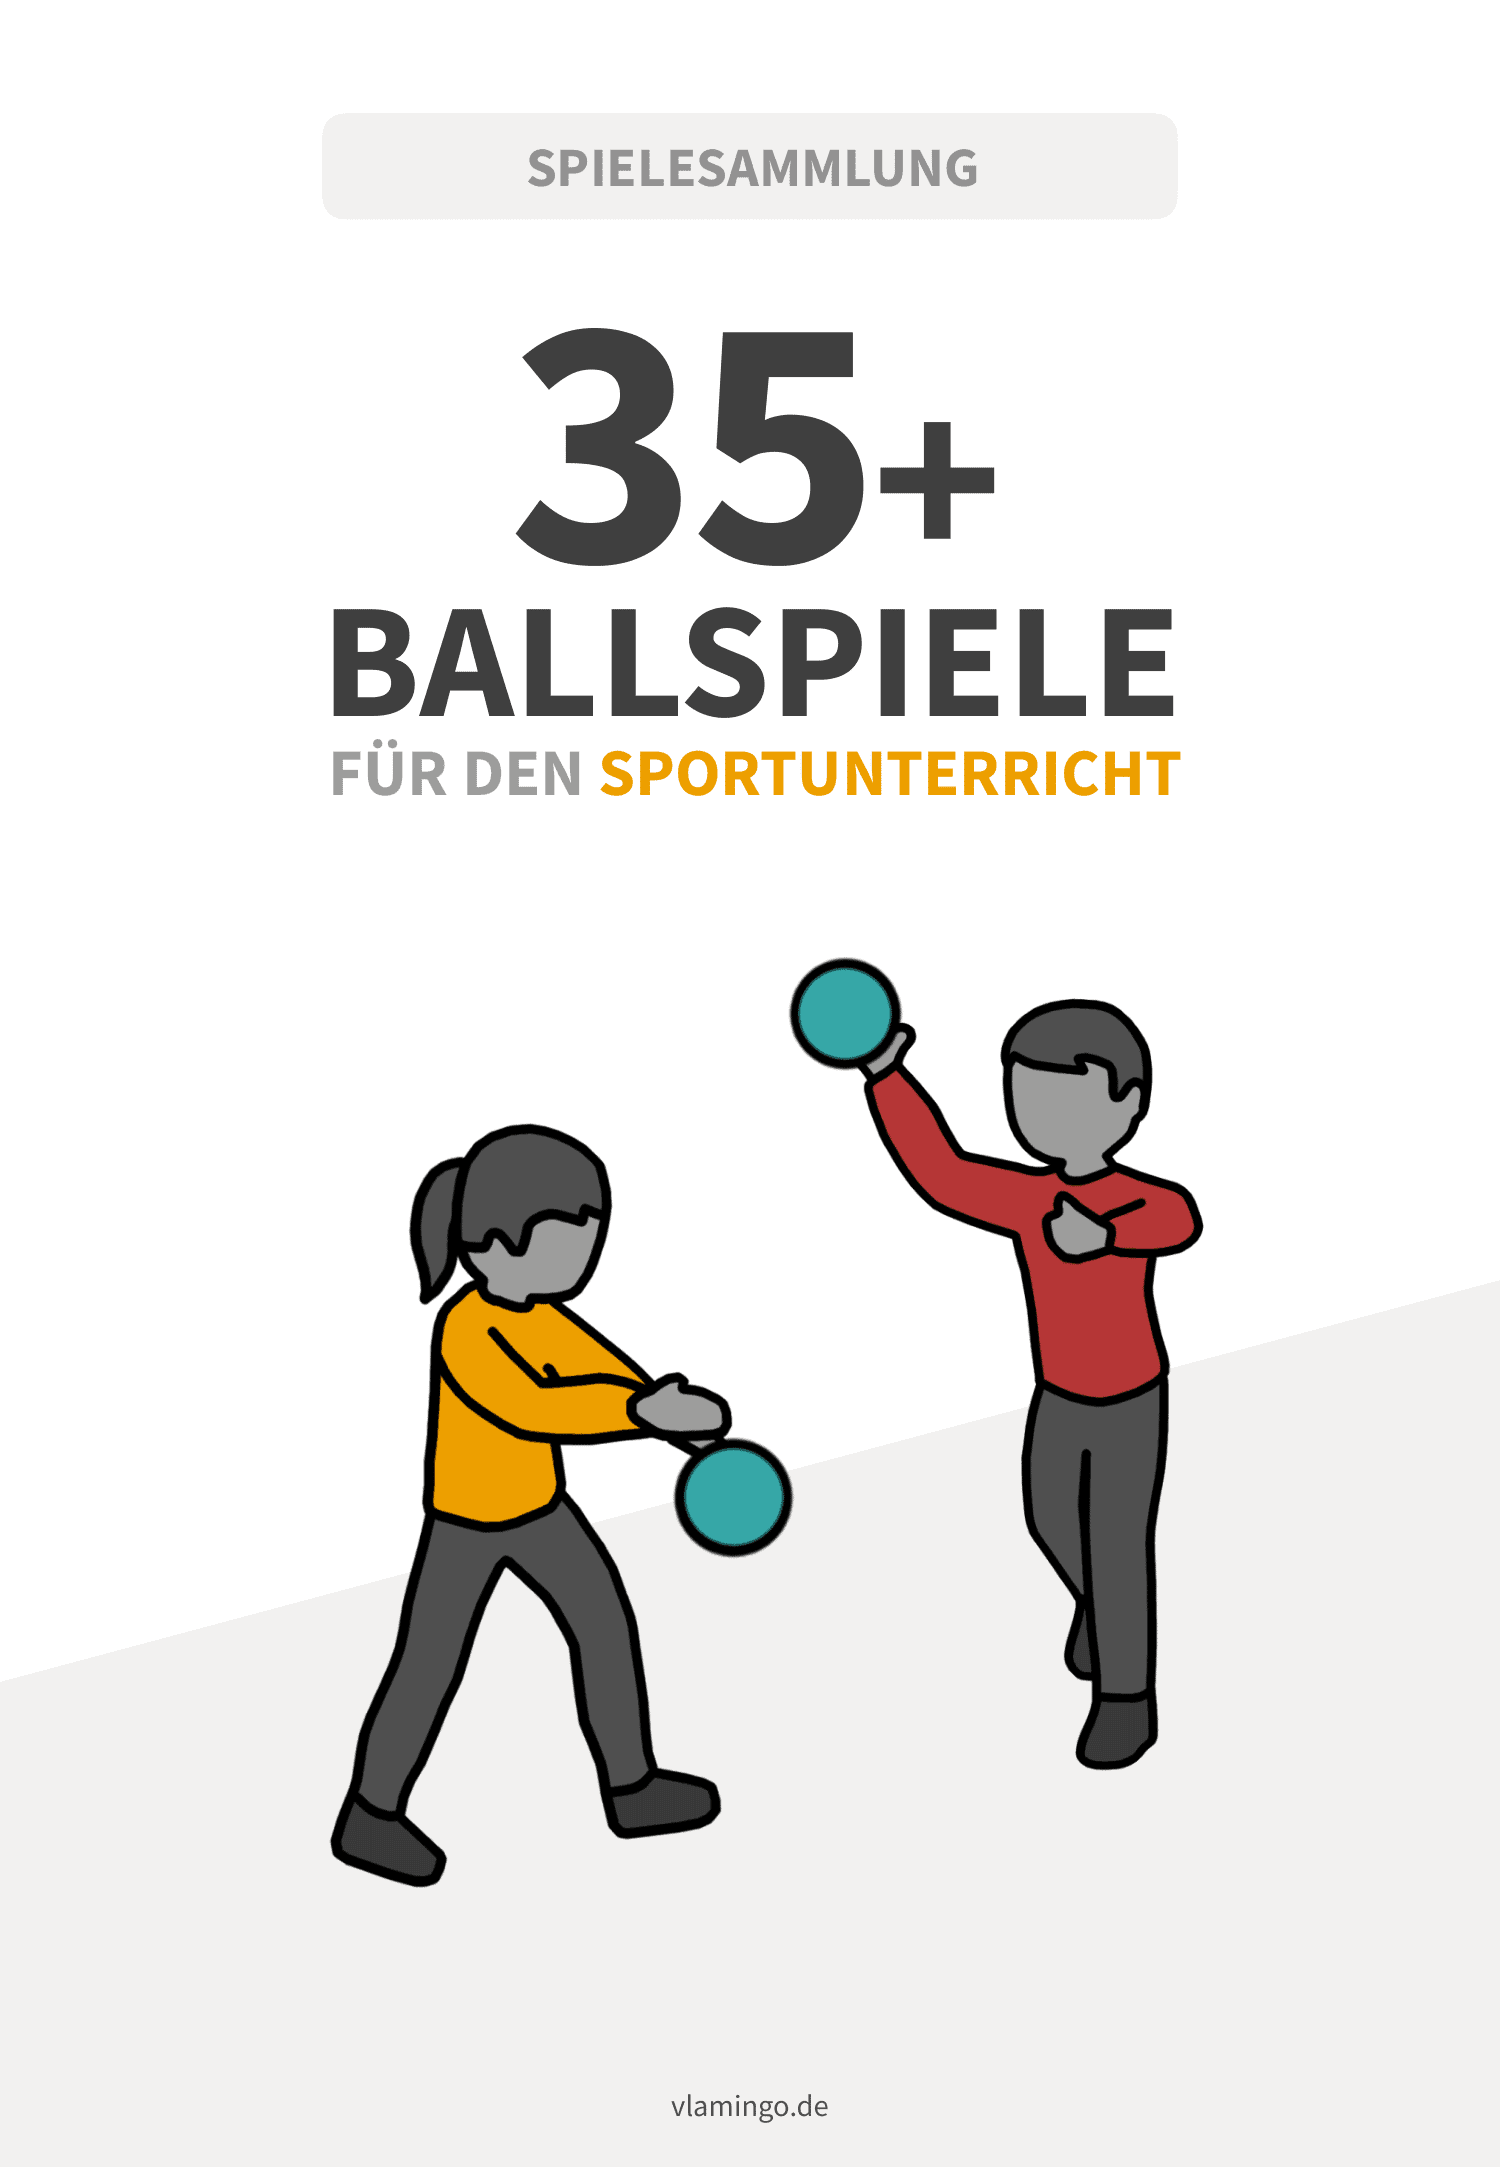 35+ Ballspiele für den Sportunterricht